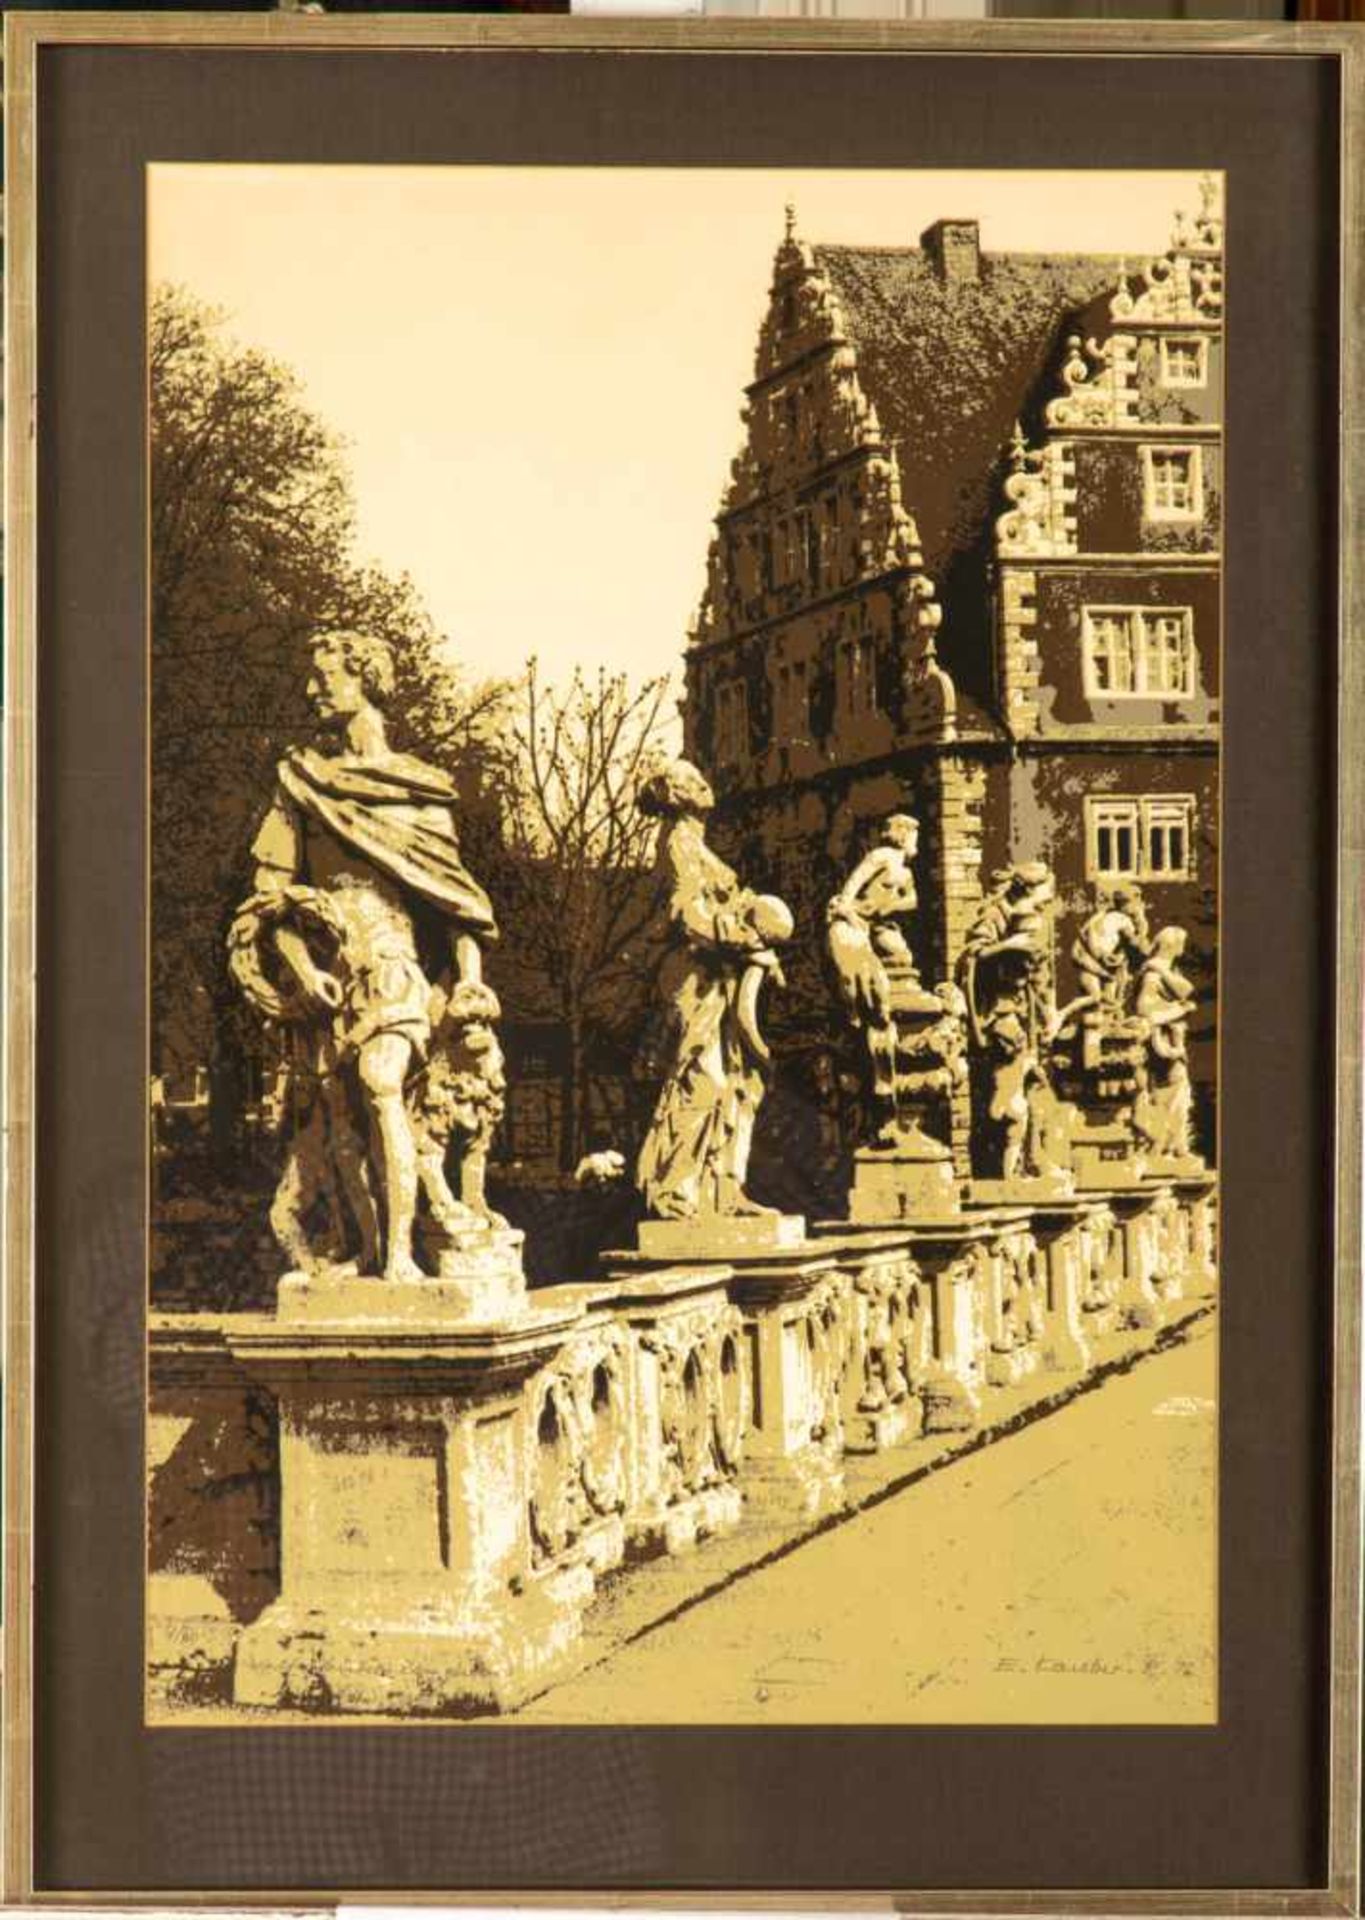 Kauber, E. Schloßansicht mit Skulpturen. Lithografie, Reu. Von hand sign., dat.(19)76. Blattgr. 59 x